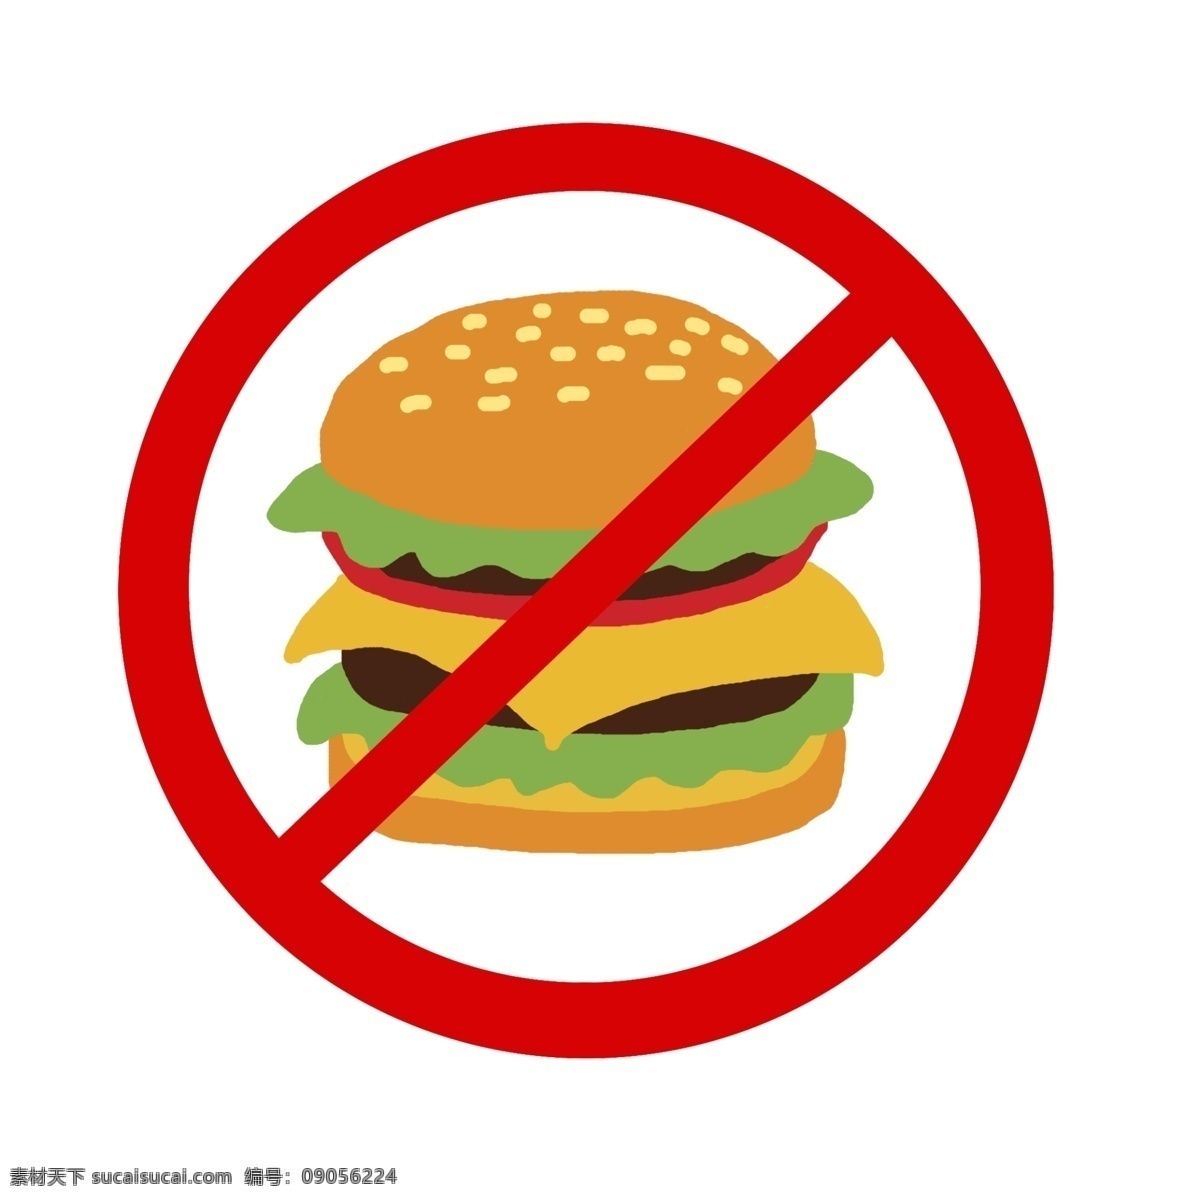 禁止 吃 汉堡 减肥瘦身 提醒 标志 禁止汉堡 瘦身 矢量标志 热量 减肥卡通 手绘标签 符号 减肥 卡通 禁止符号